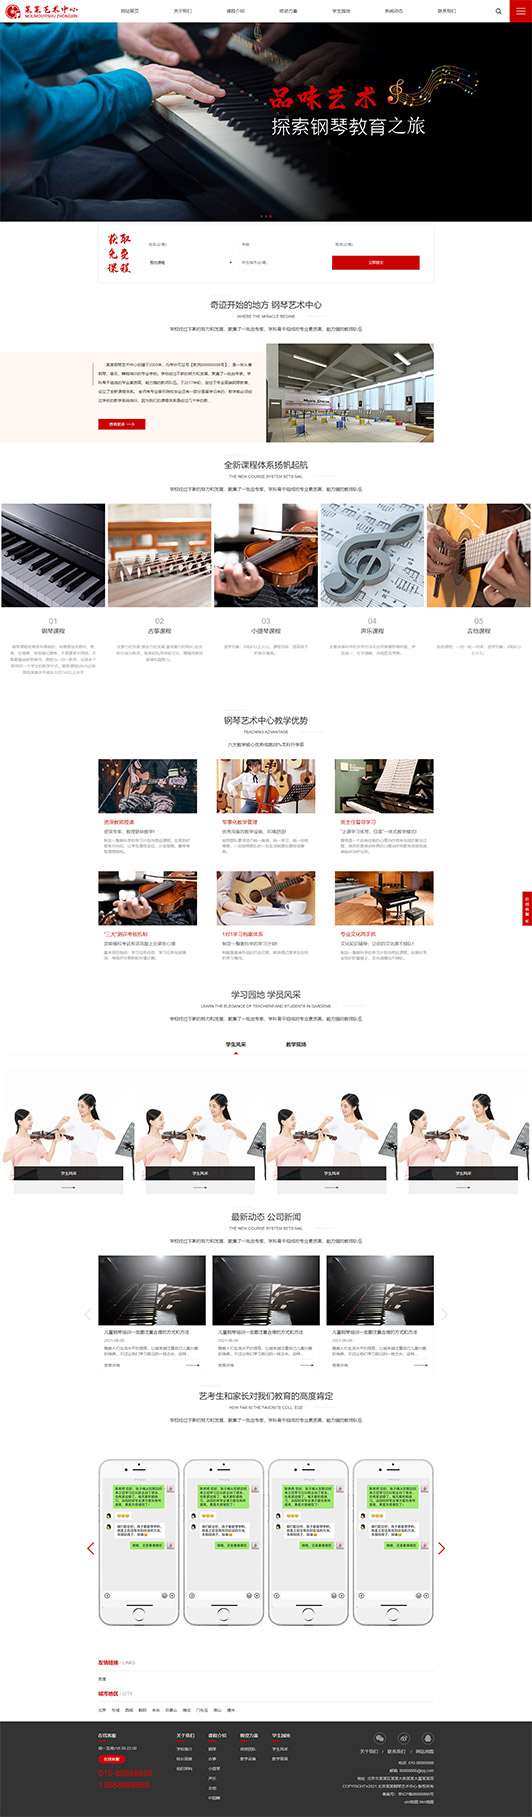 桂林钢琴艺术培训公司响应式企业网站